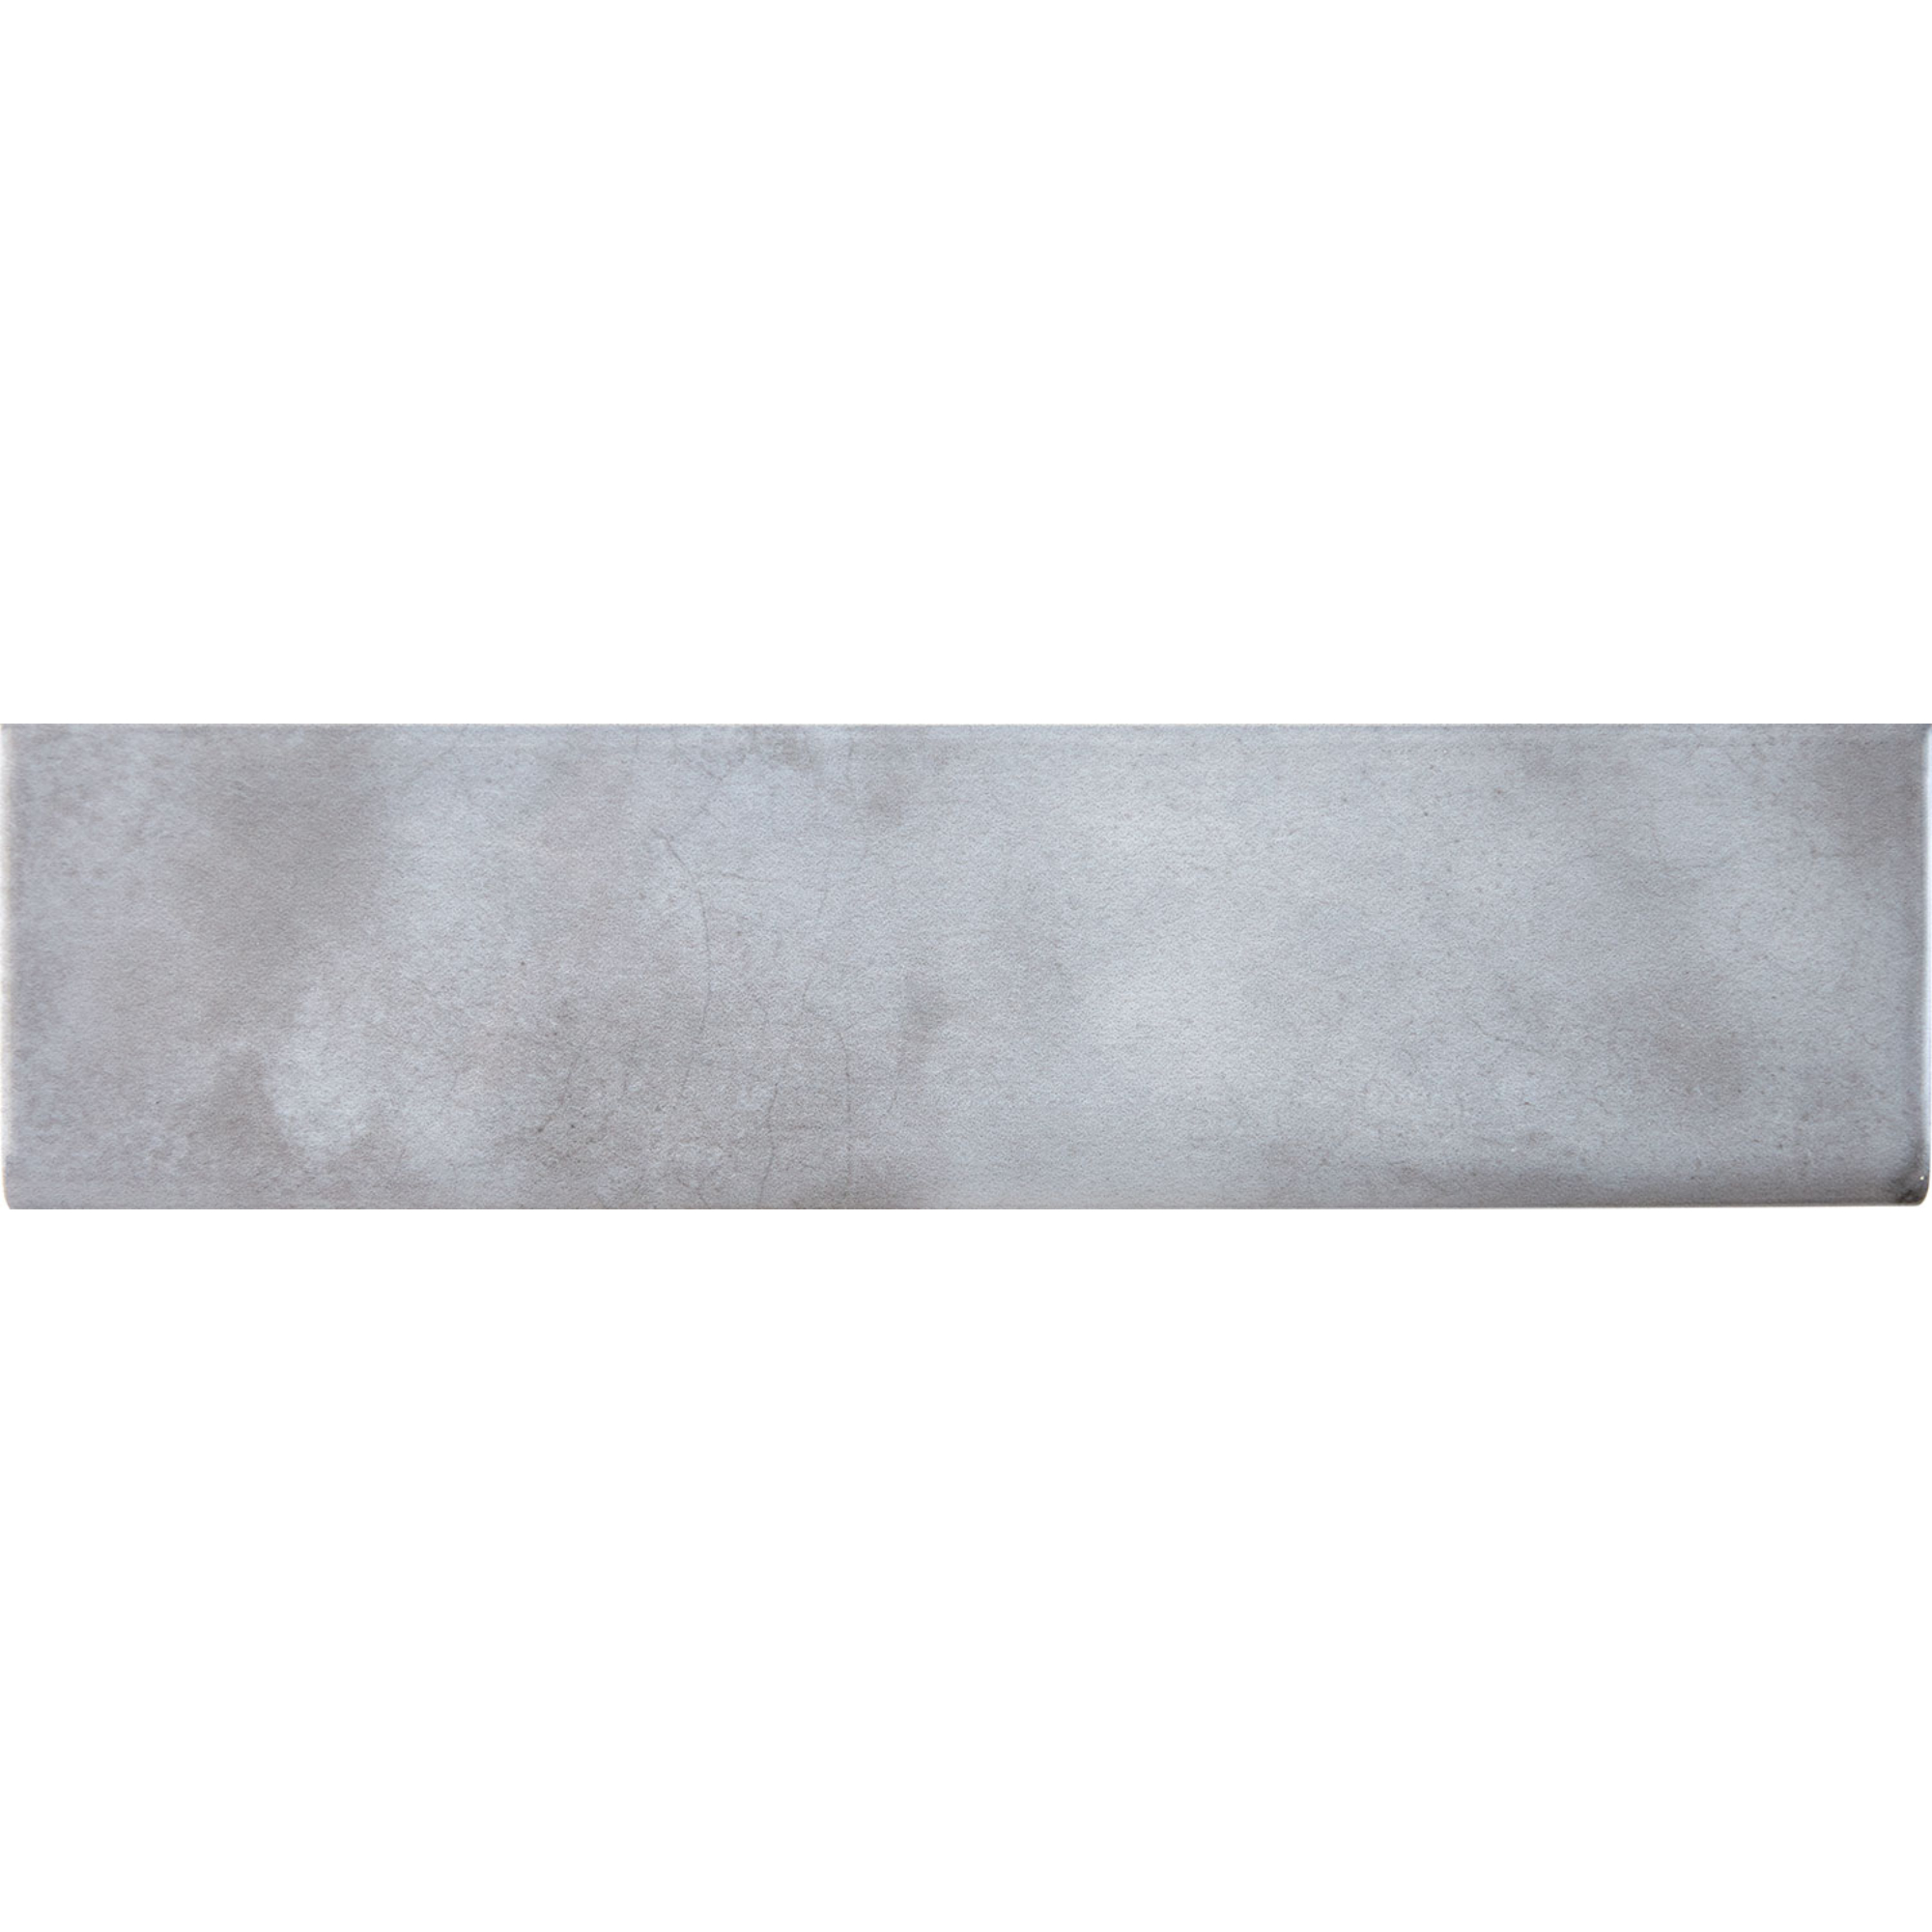 Splendours Grey Trim 7.5x30cm (23996)